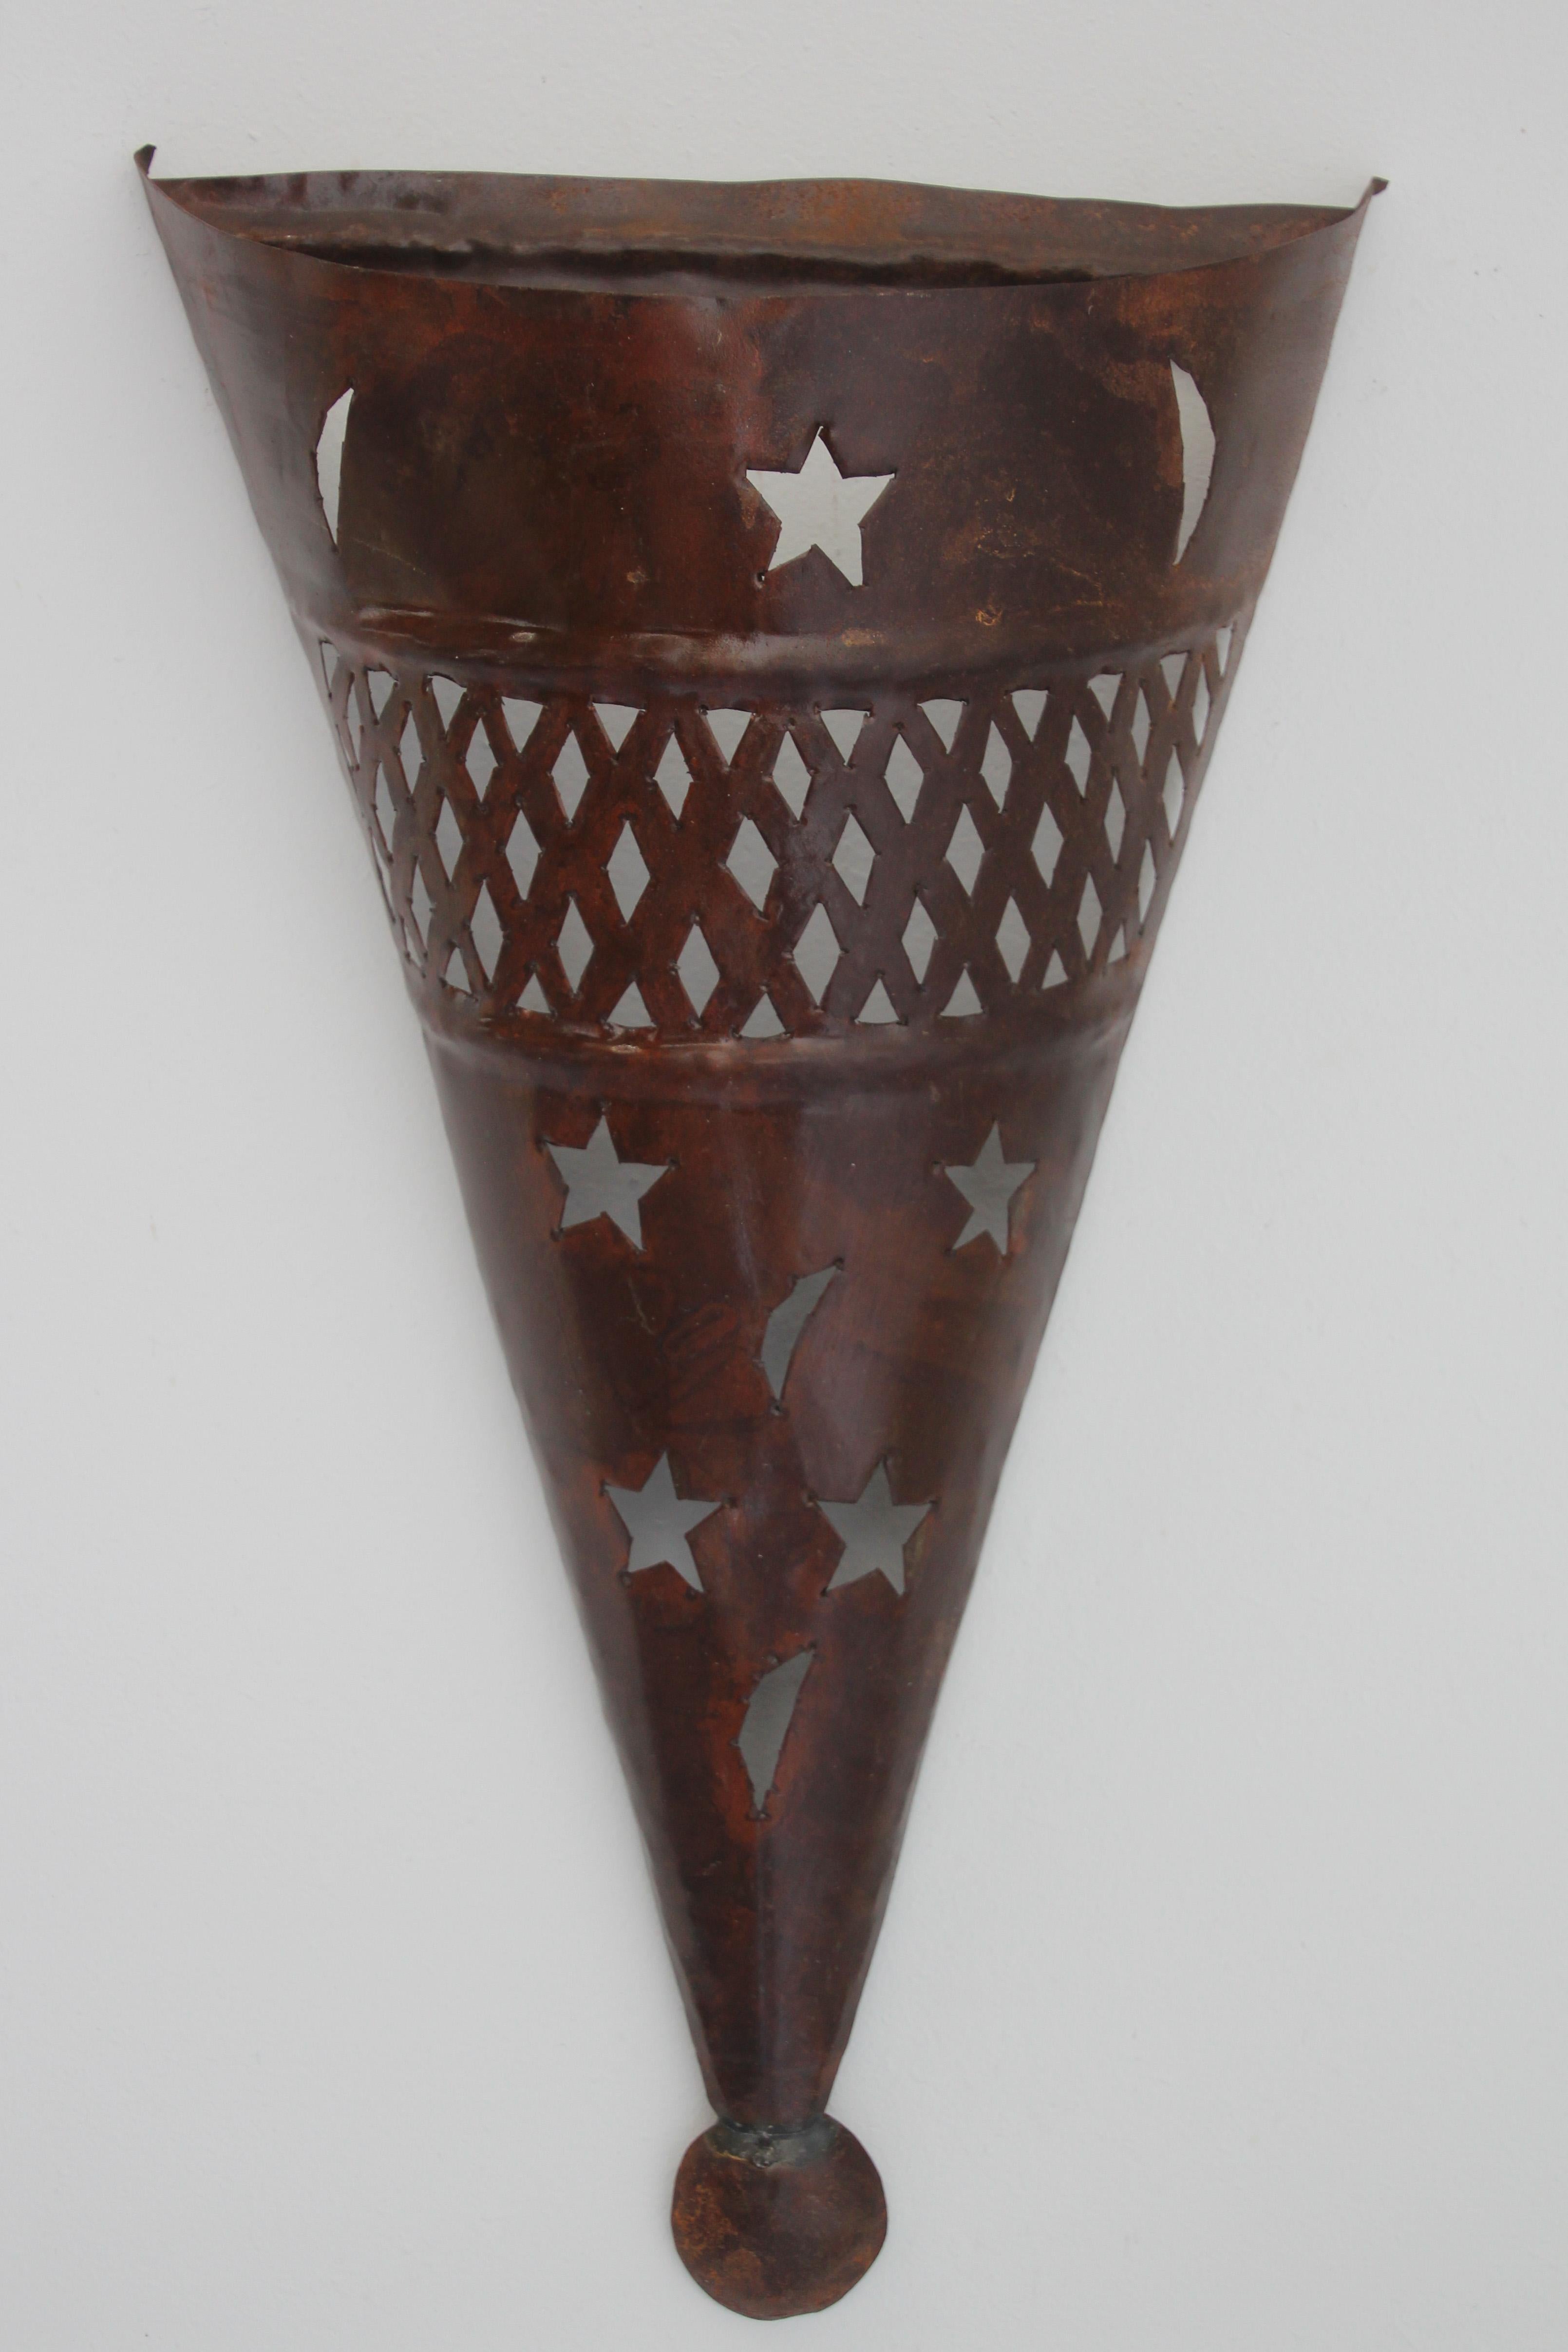 Handgefertigter marokkanisch-spanischer Tole-Leuchtenschirm aus Metall in Kegelform.
Hispano Moresque-Leuchtenschirm mit ausgeschnittenen Sternen und Halbmonden.
Dunkle Rostpatina,
Zur Verwendung im Innen- und Außenbereich.
Kein Stromanschluss,